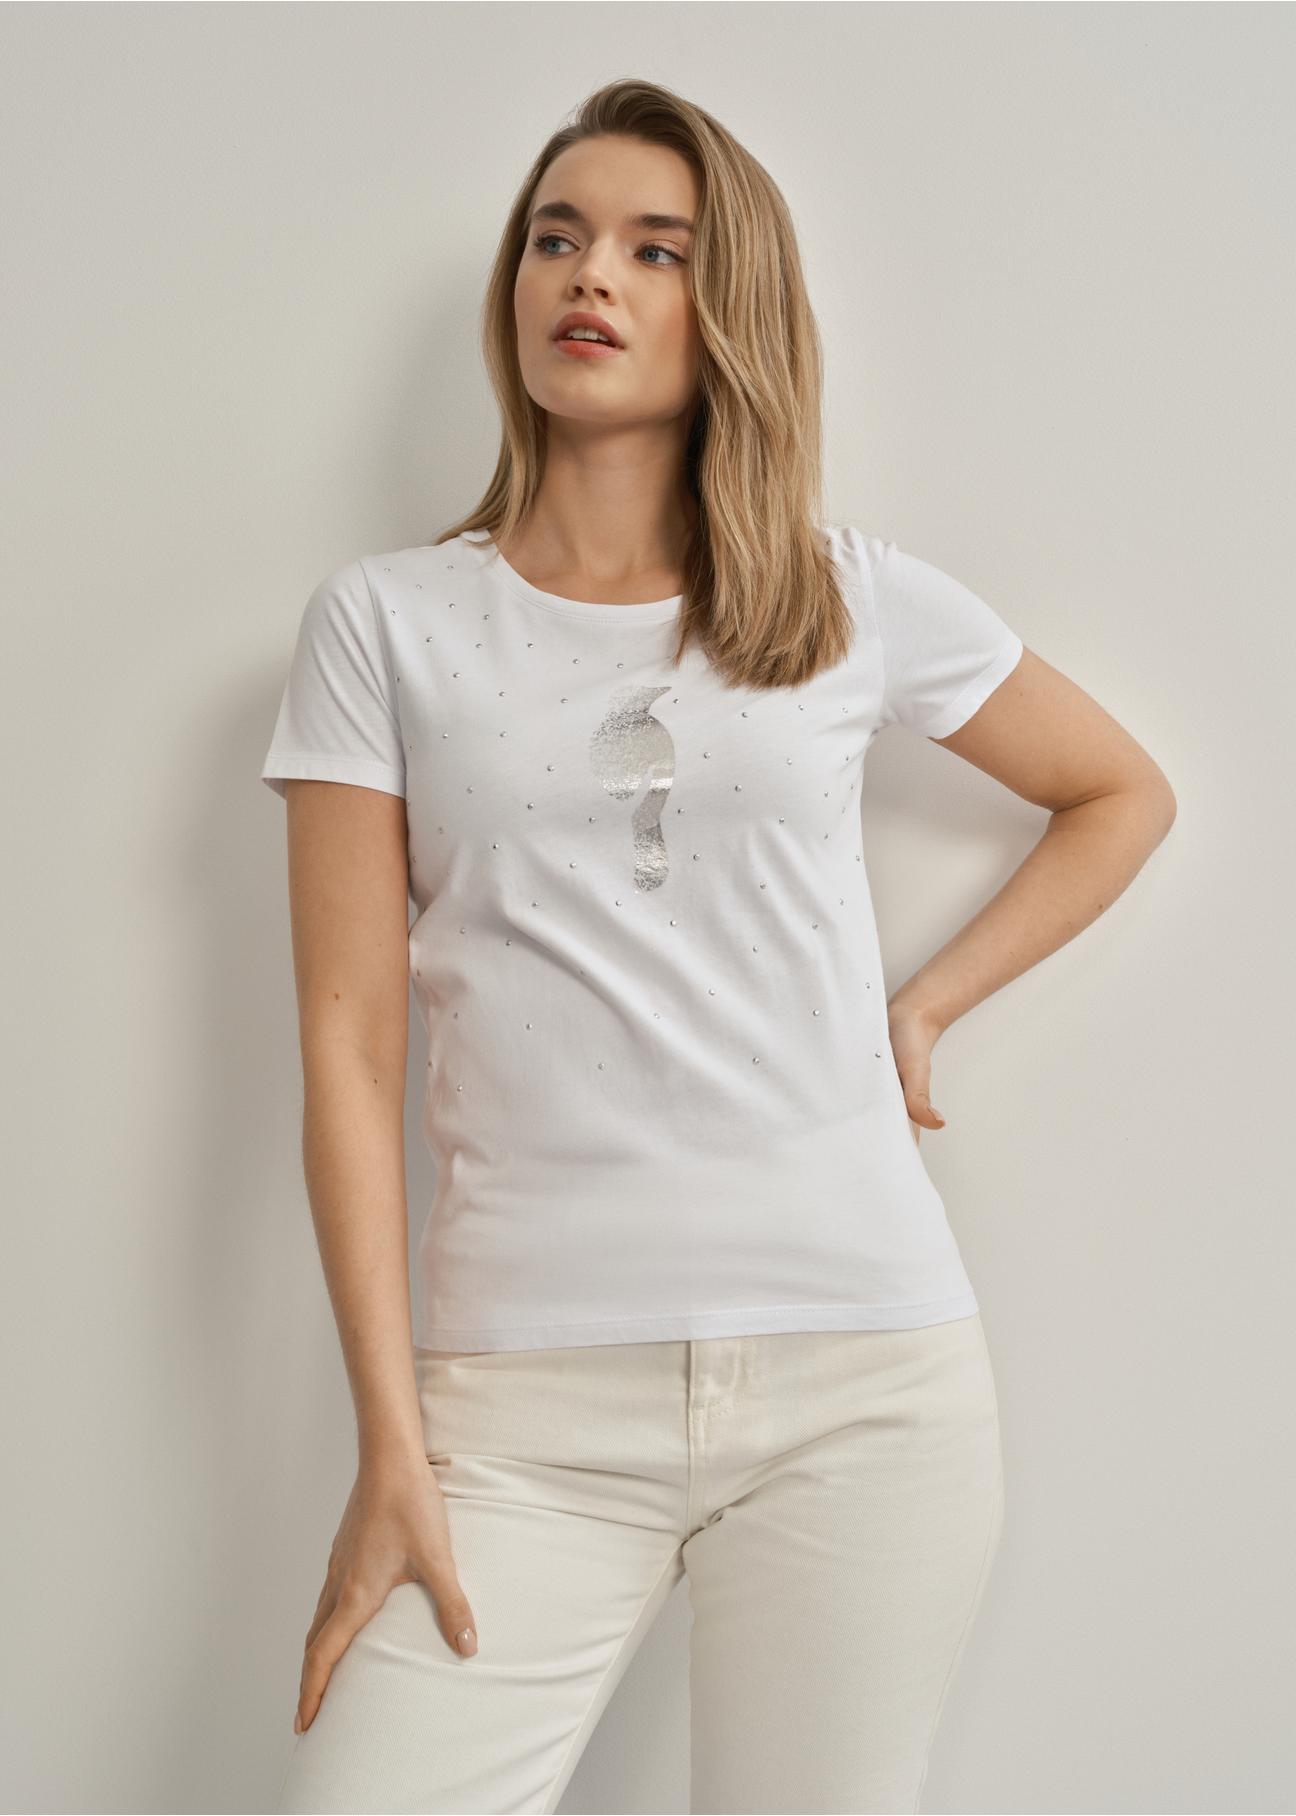 Biały T-shirt damski ze srebrnym logo TSHDT-0110-11(W23)